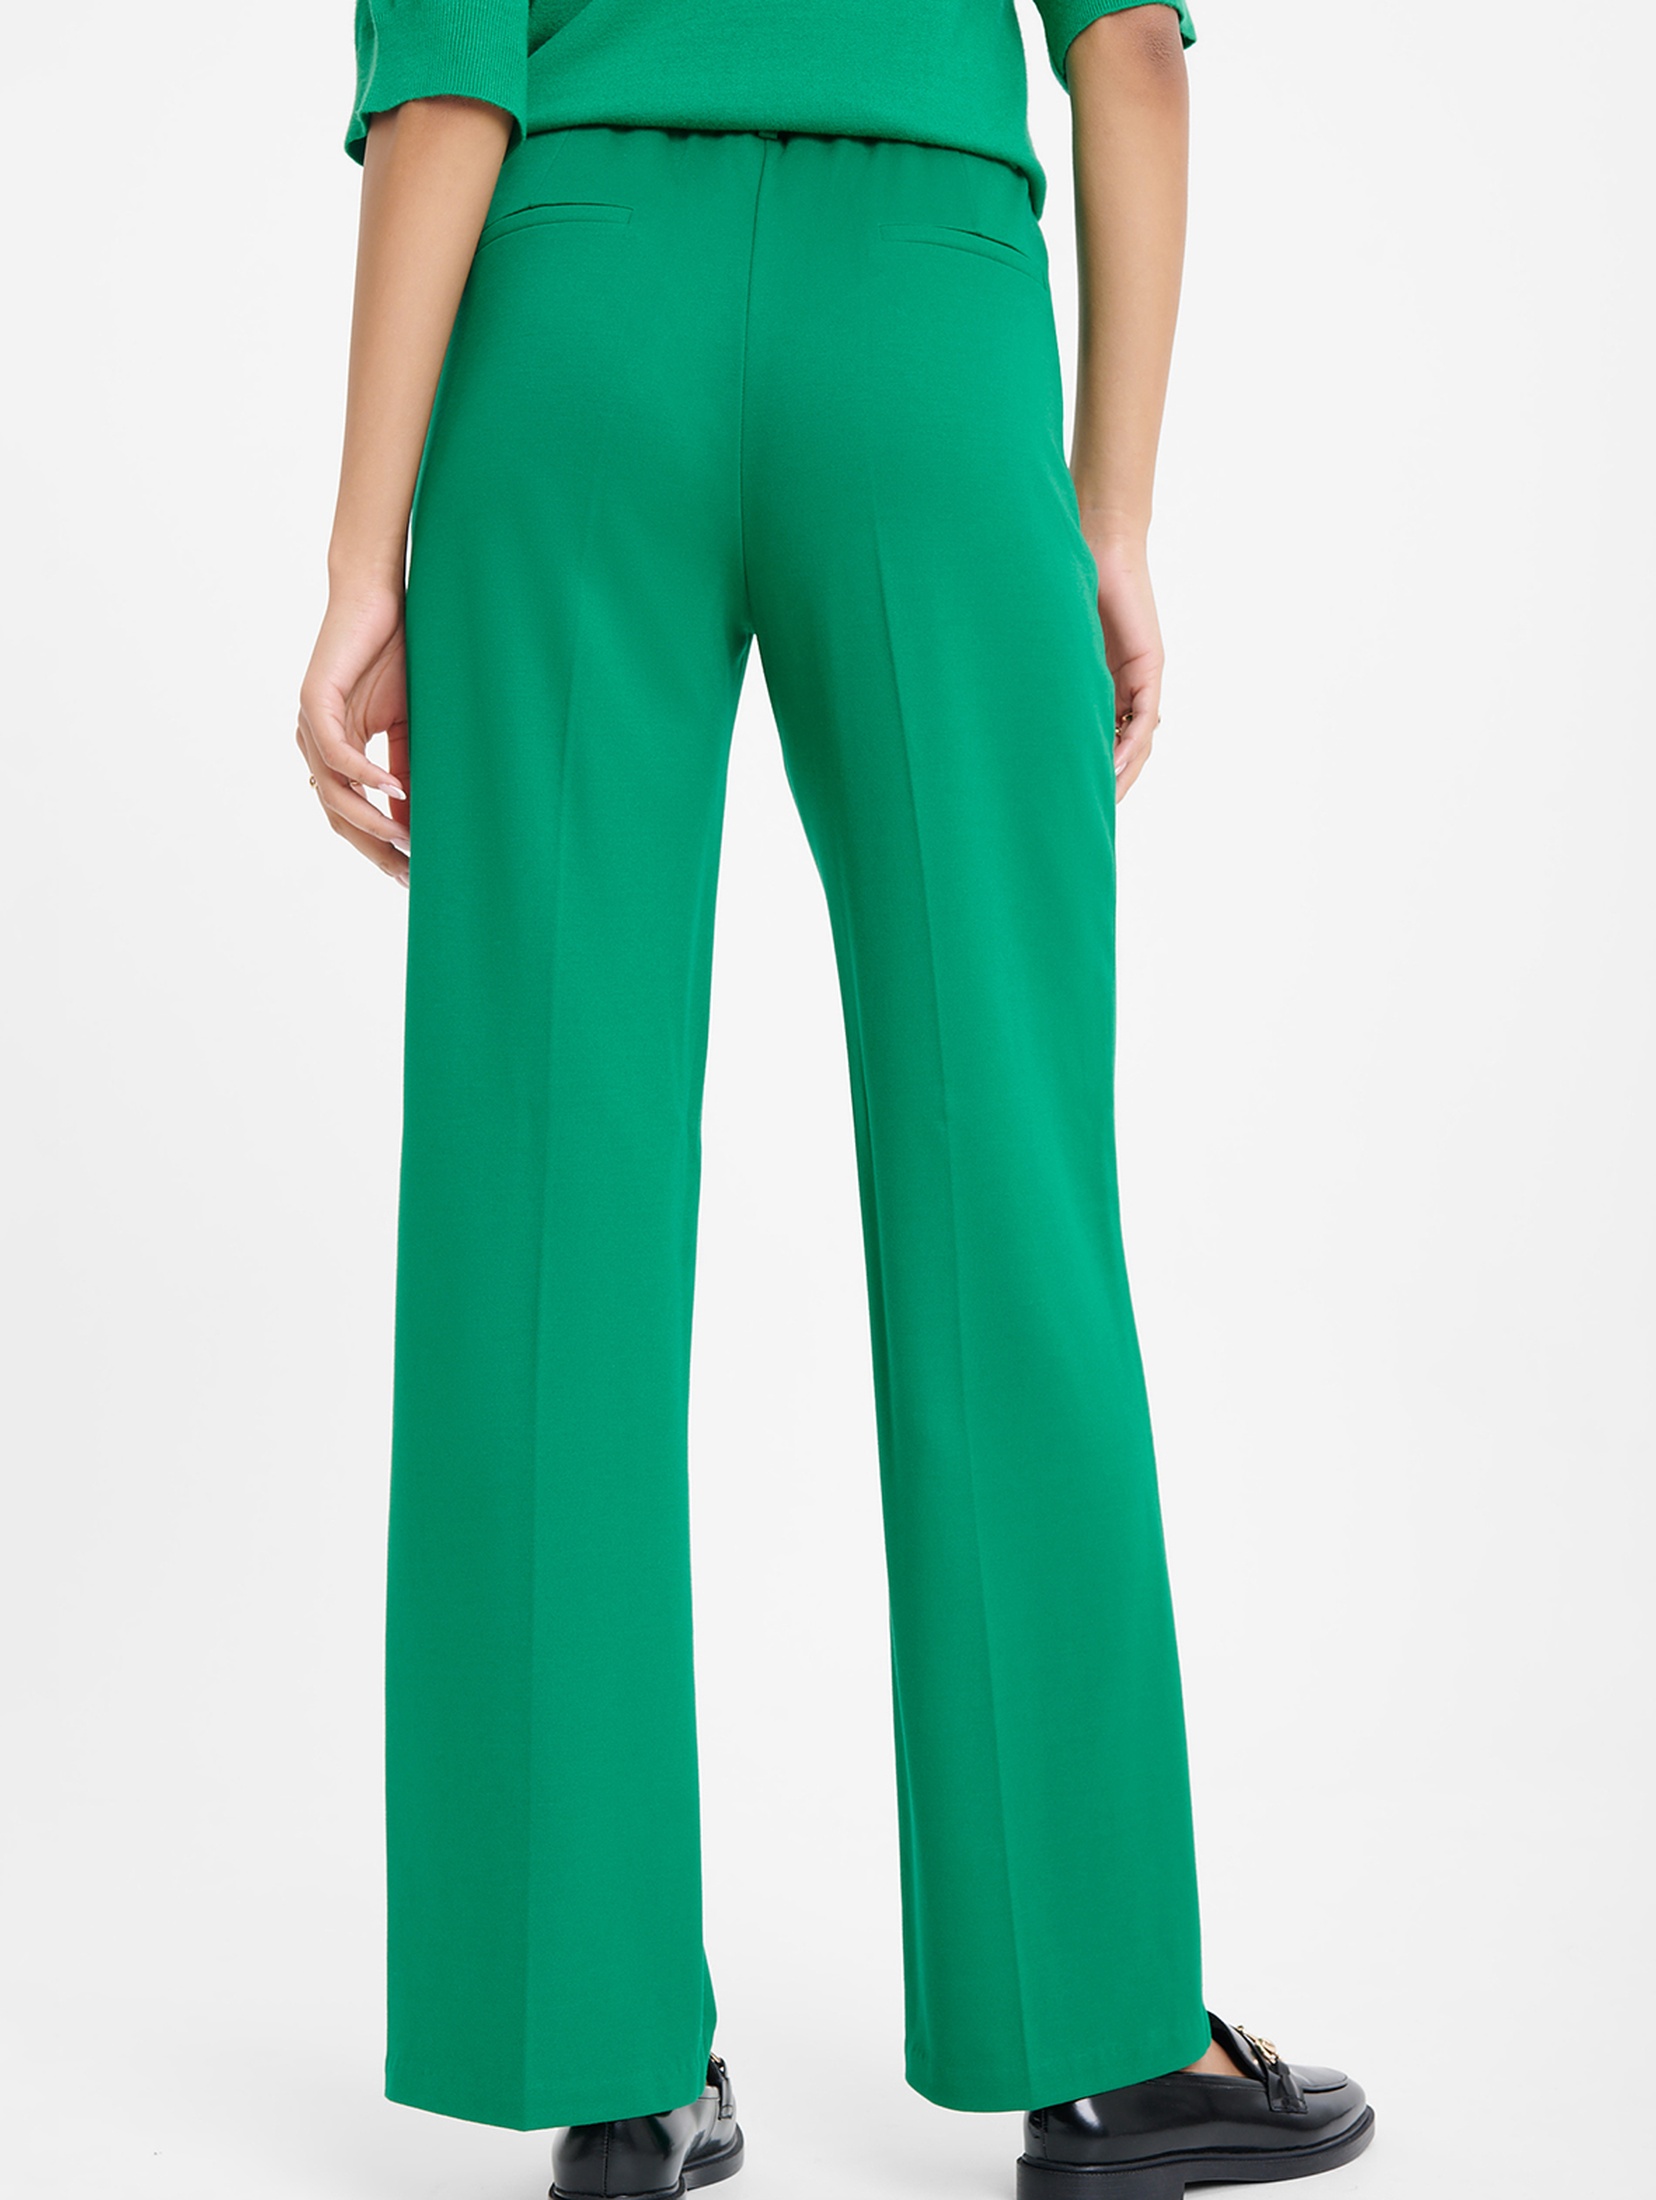 Spodnie klasyczne damskie zielone